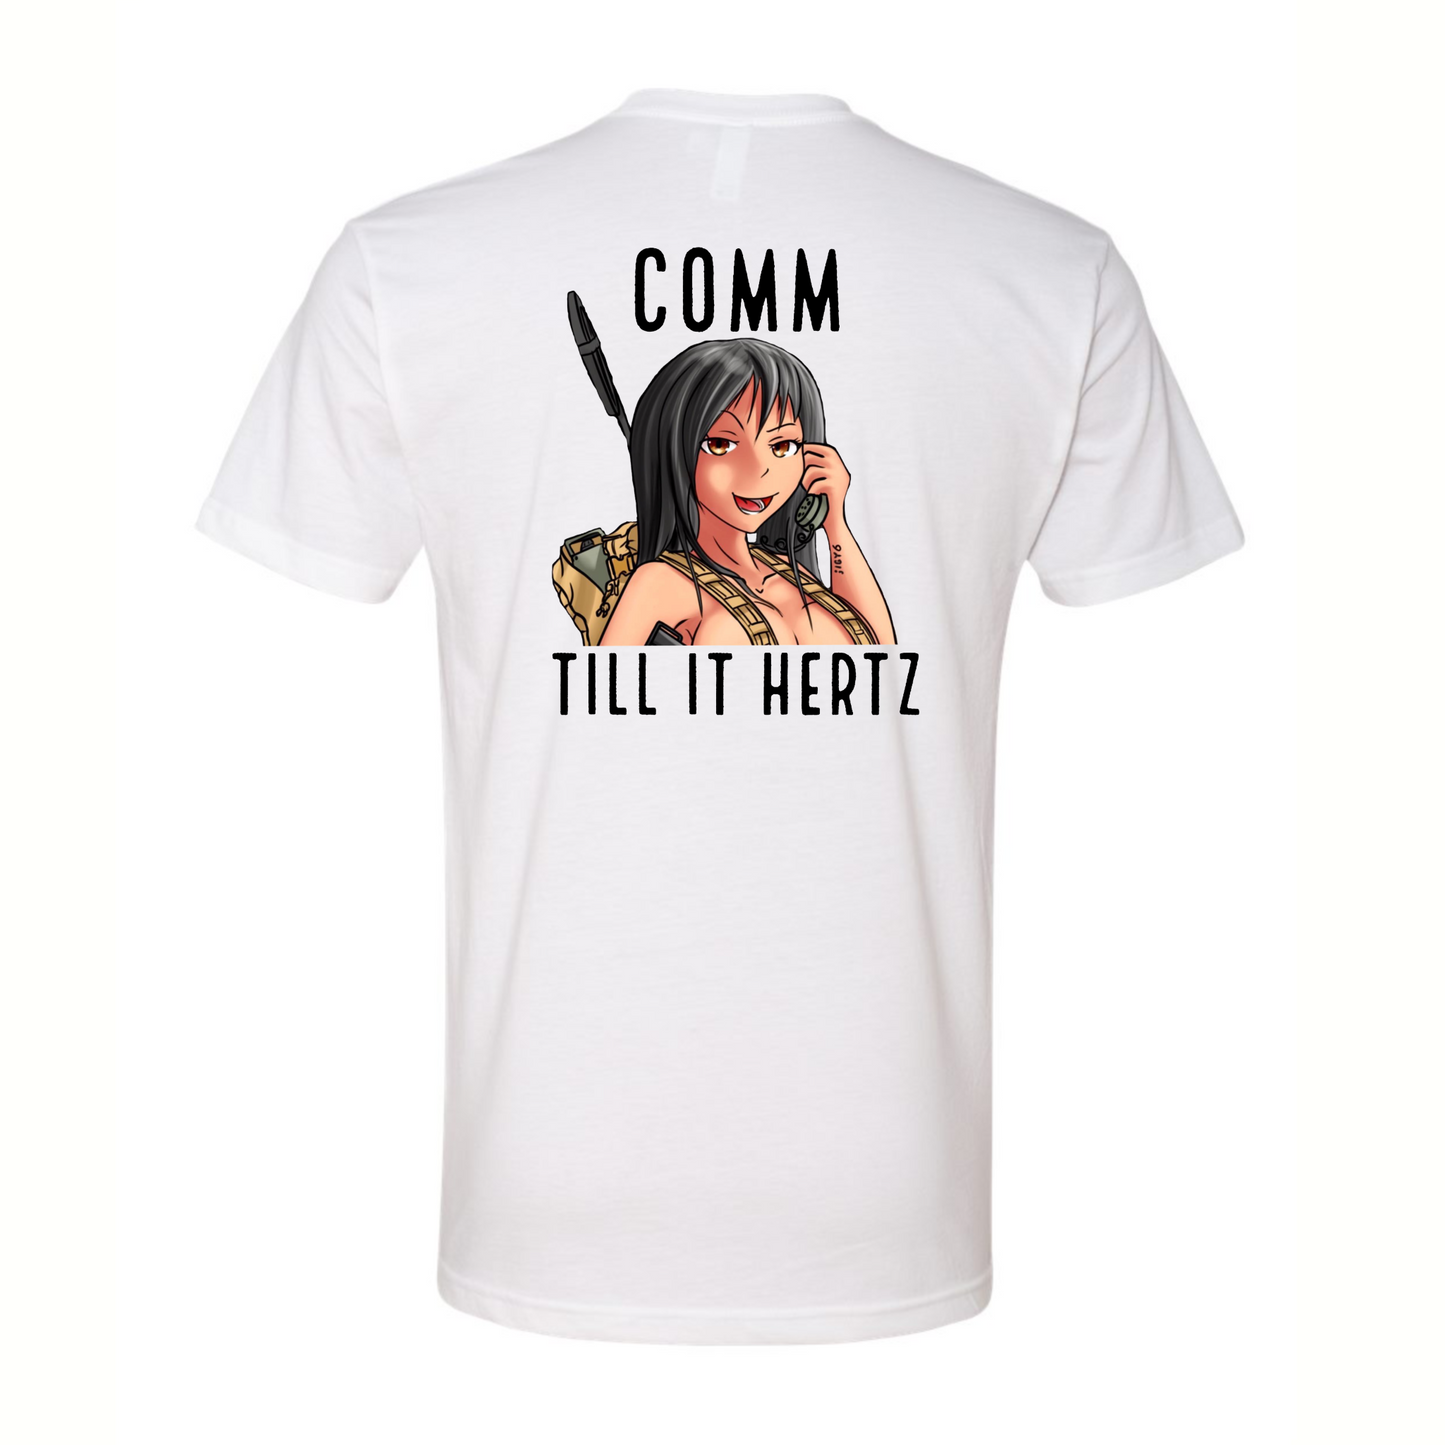 Comm Till It Hertz 0621